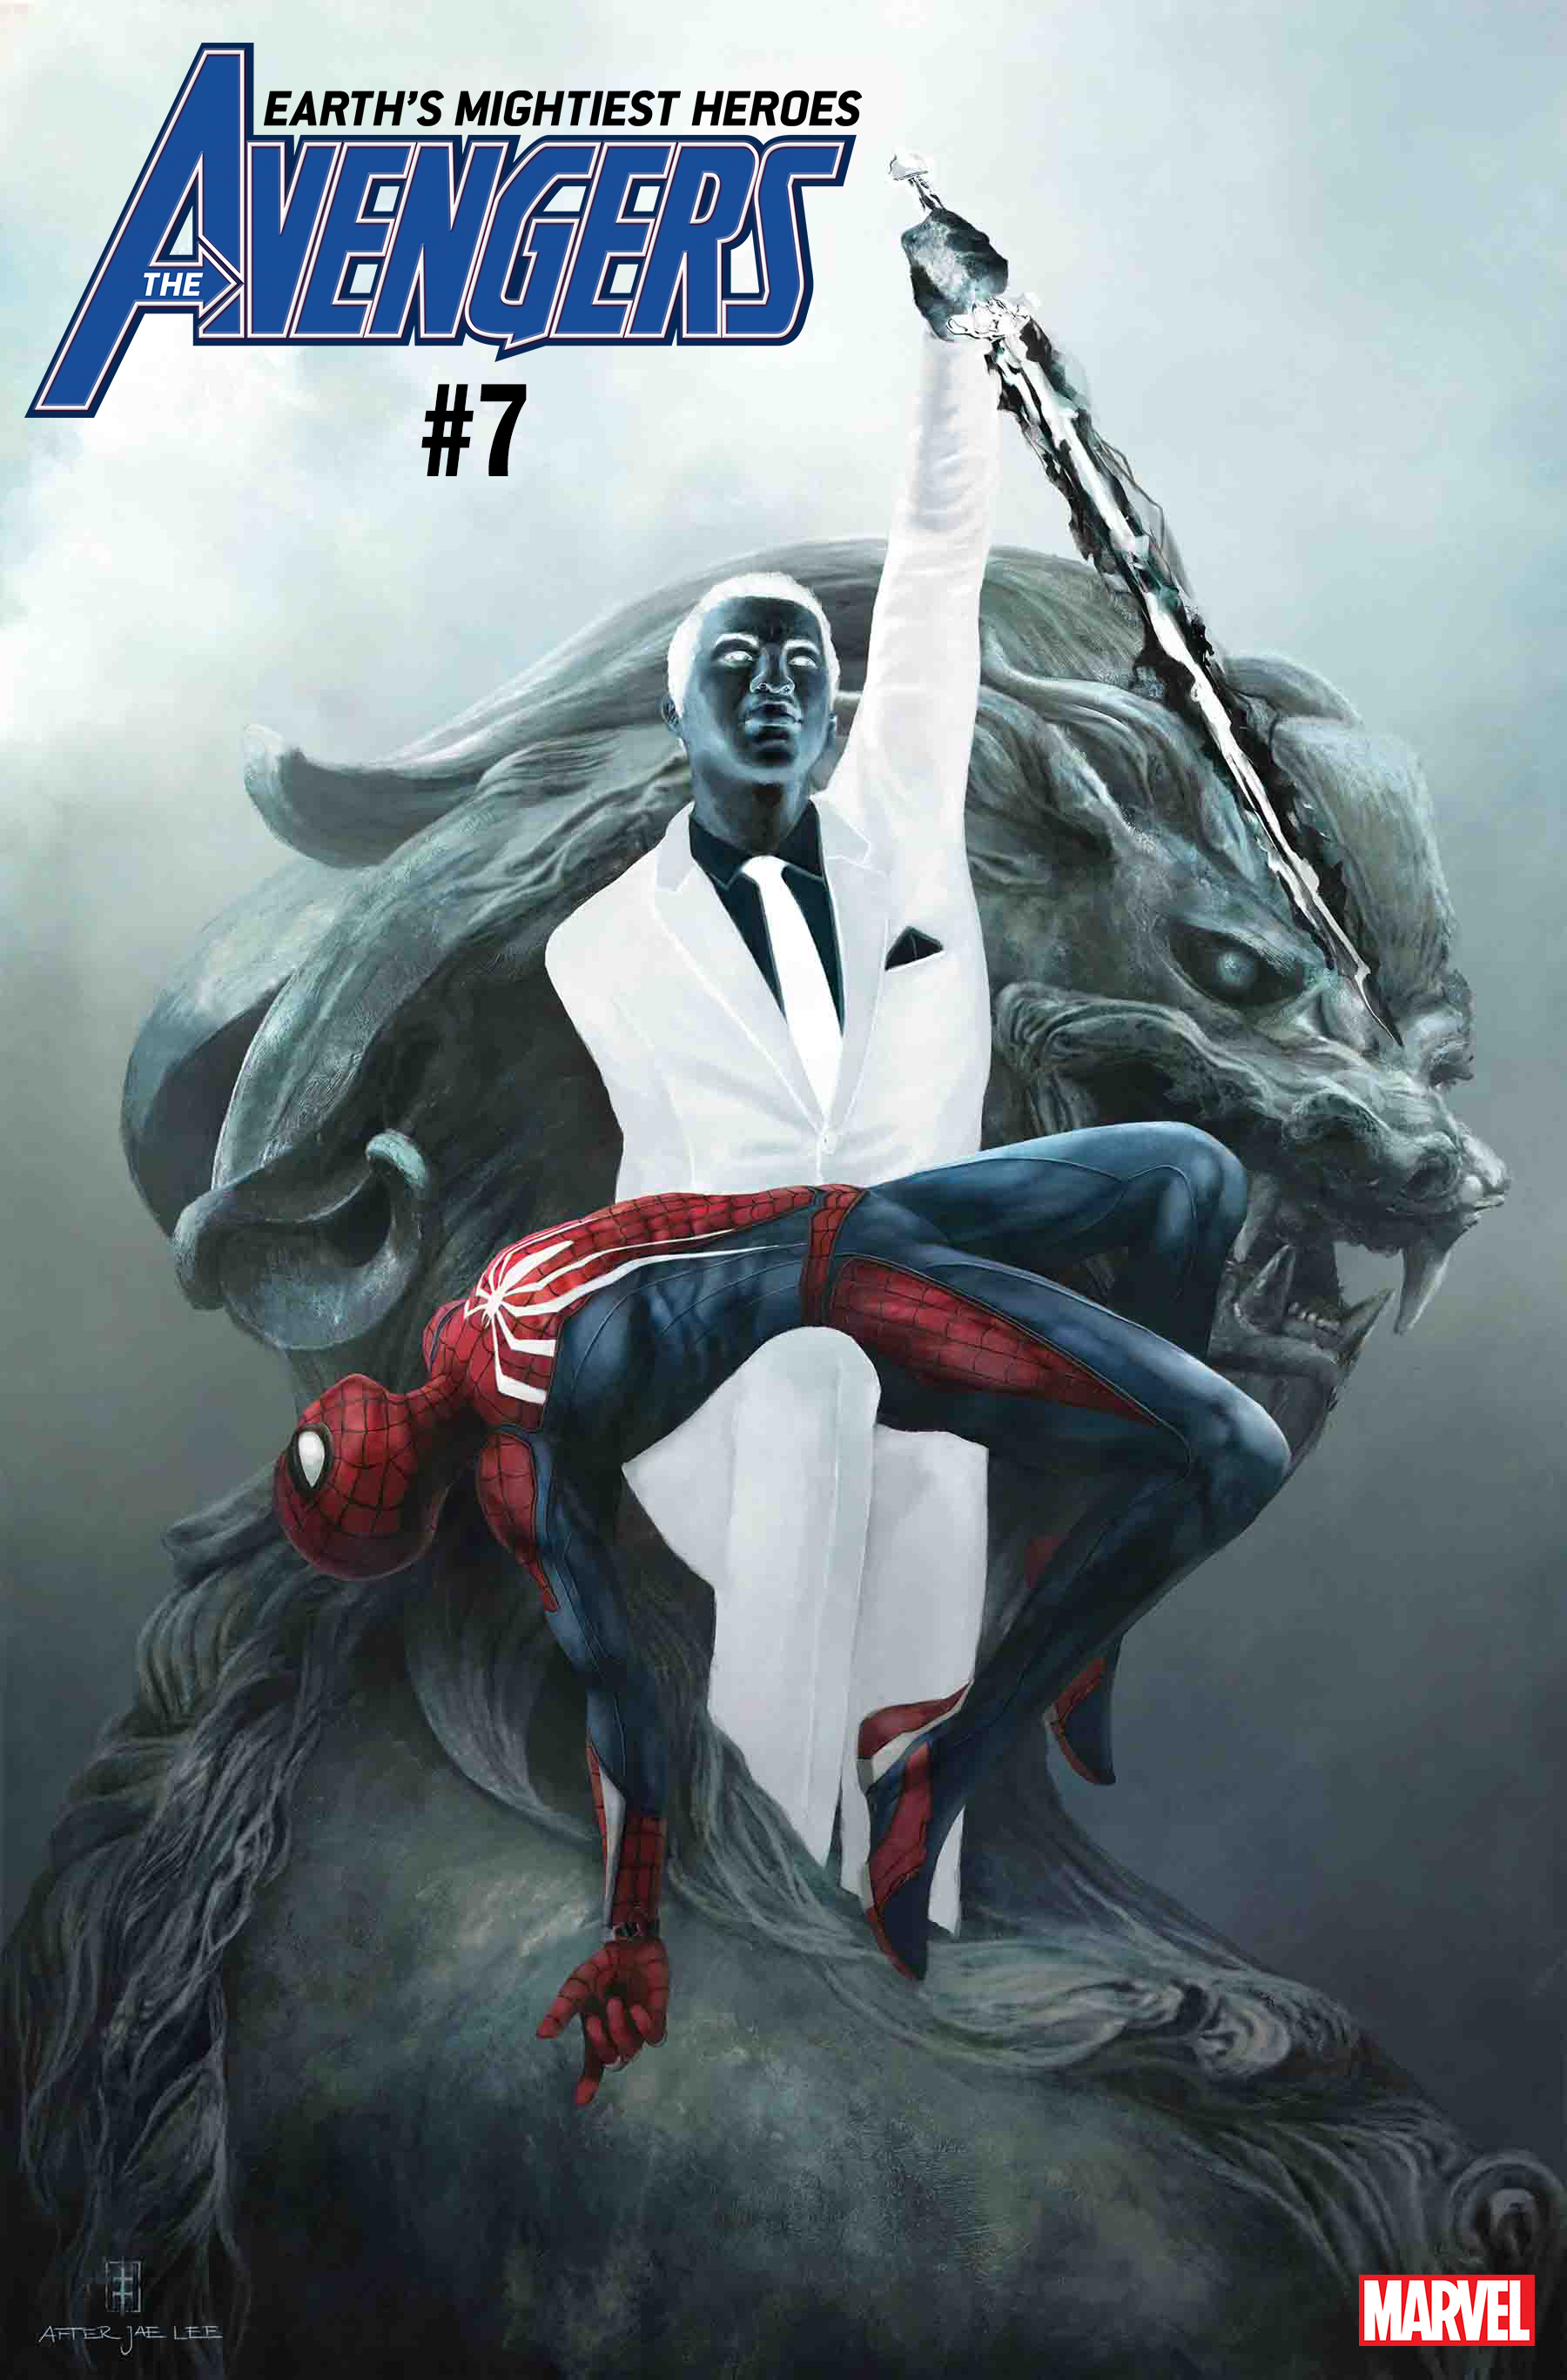 AVENGERS #7 -marvel’s spider-man cover